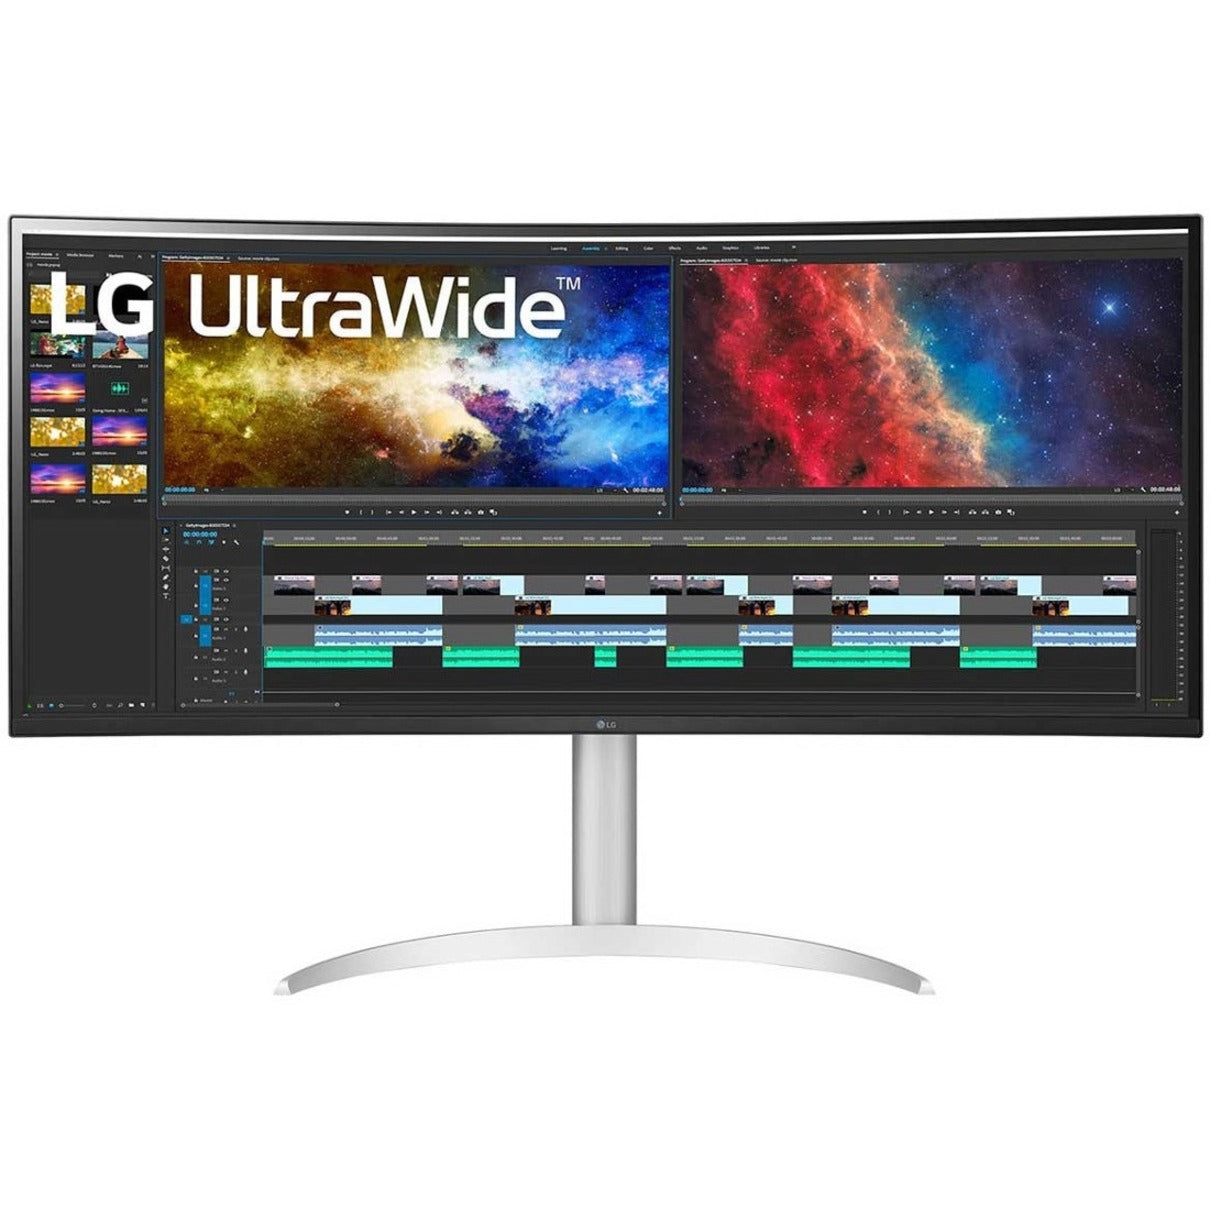 Monitor de juego de pantalla ancha LG Ultrawide 38BP85C-W LCD de 3840 x 1600 USB Tipo-C HDMI DP AMD FreeSync 2 HDMI 300 Nits 95% DCI-P3 (CIE 1976) 1.07 Mil Millones de Colores Garantía de 3 Años. LG se traduce como "LG" en español.